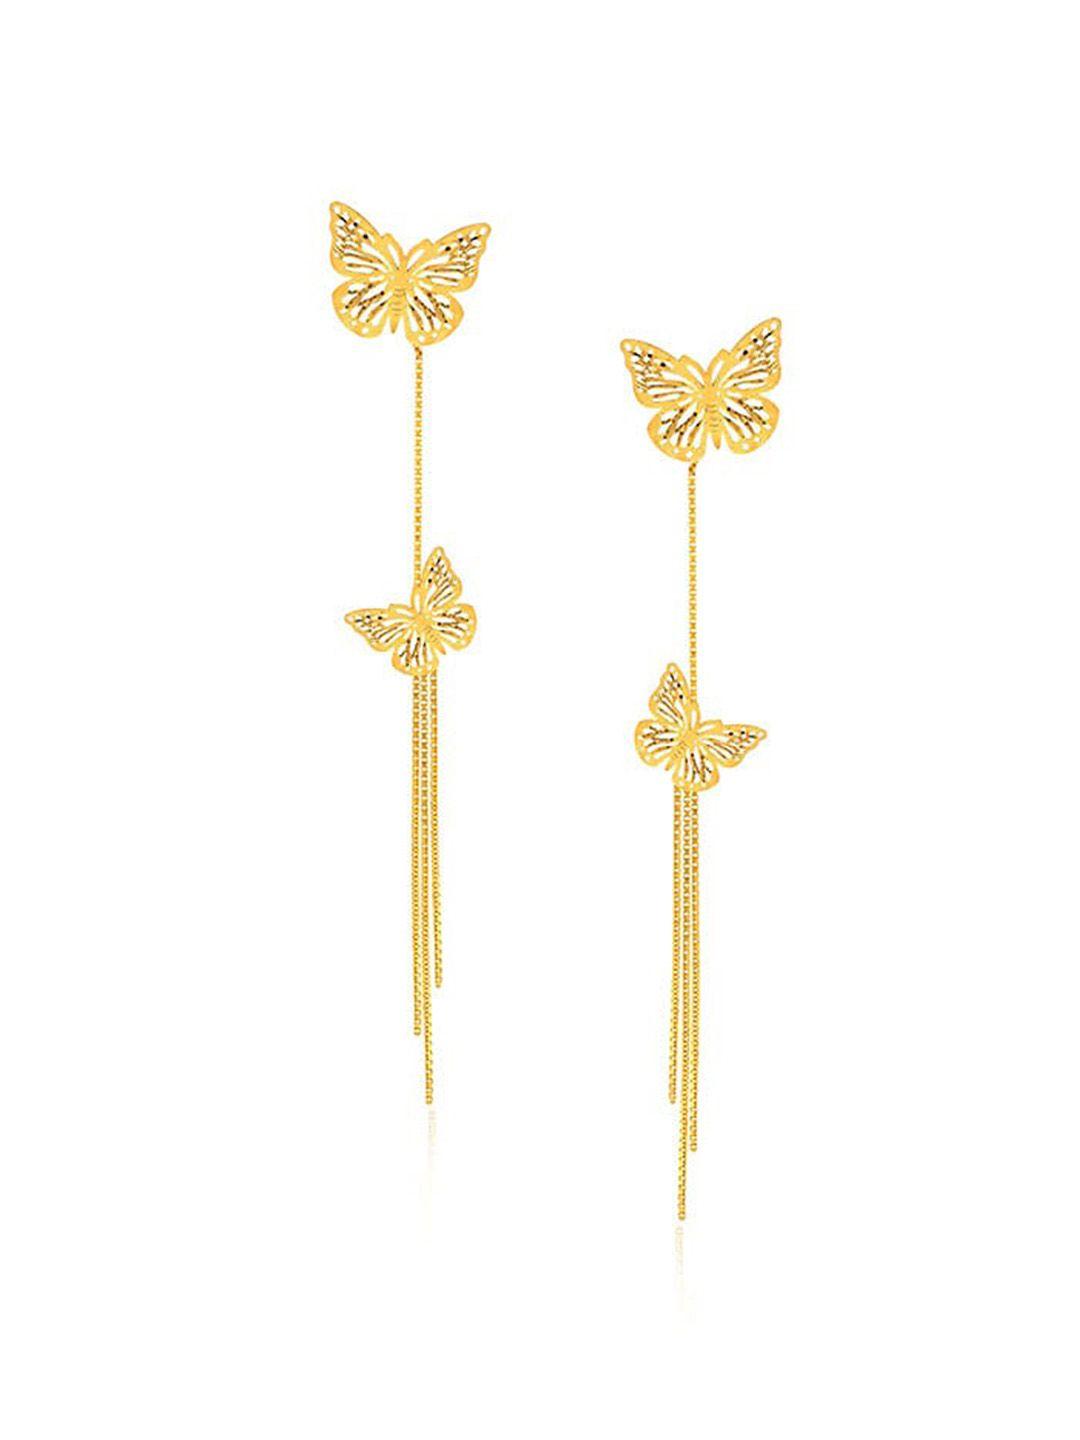 senco-22kt-gold-trendy-flutter-drop-earrings-4.5gm